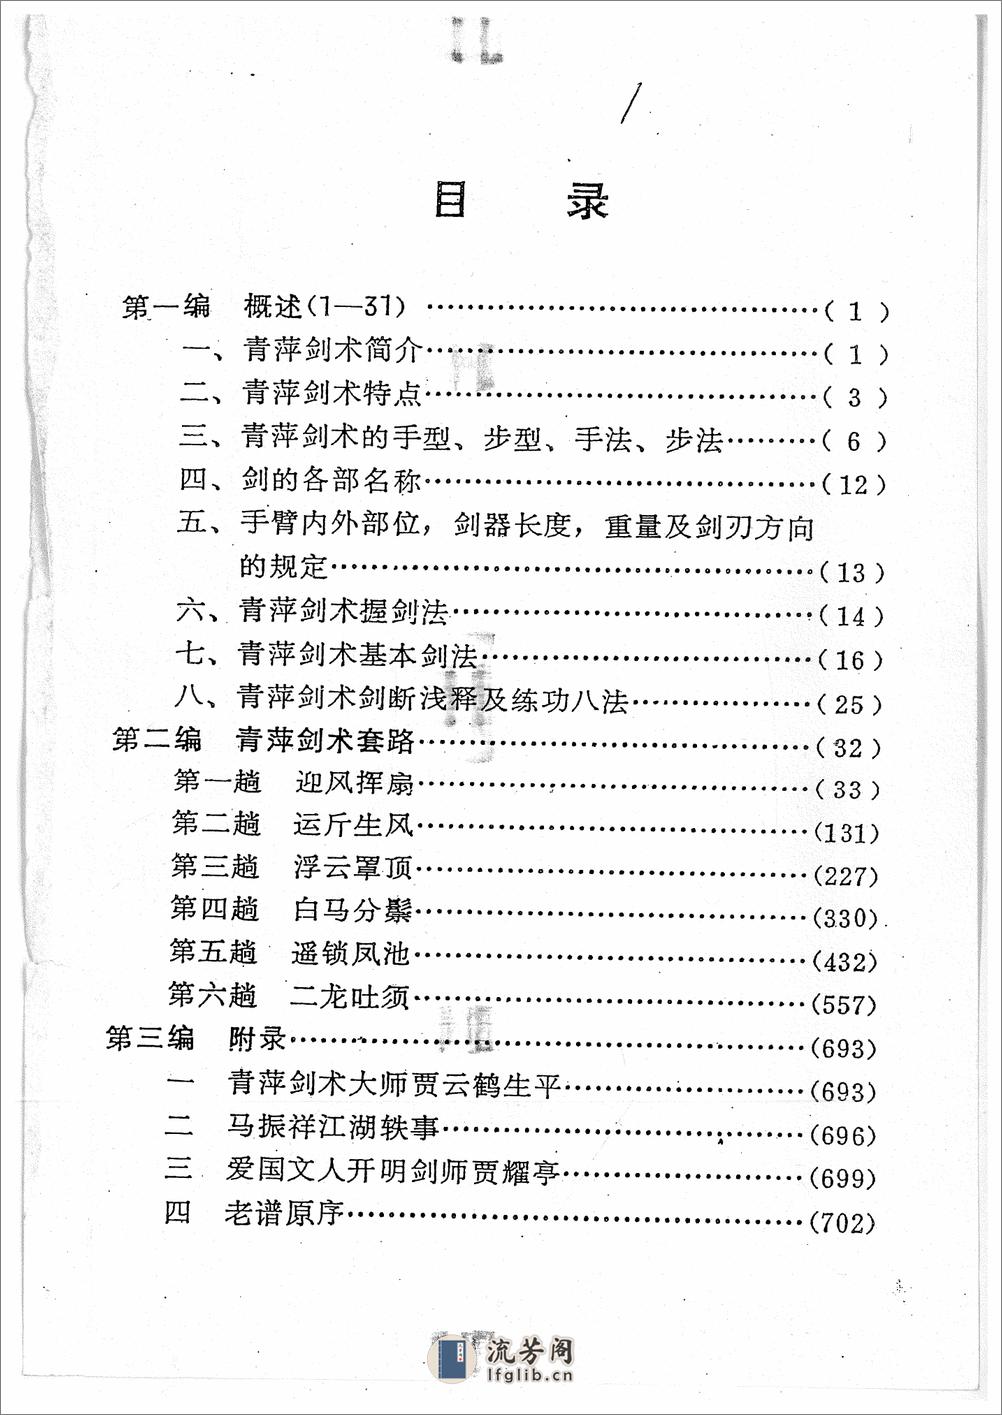 《青萍剑》贾勃生、刘滋茂 - 第1页预览图